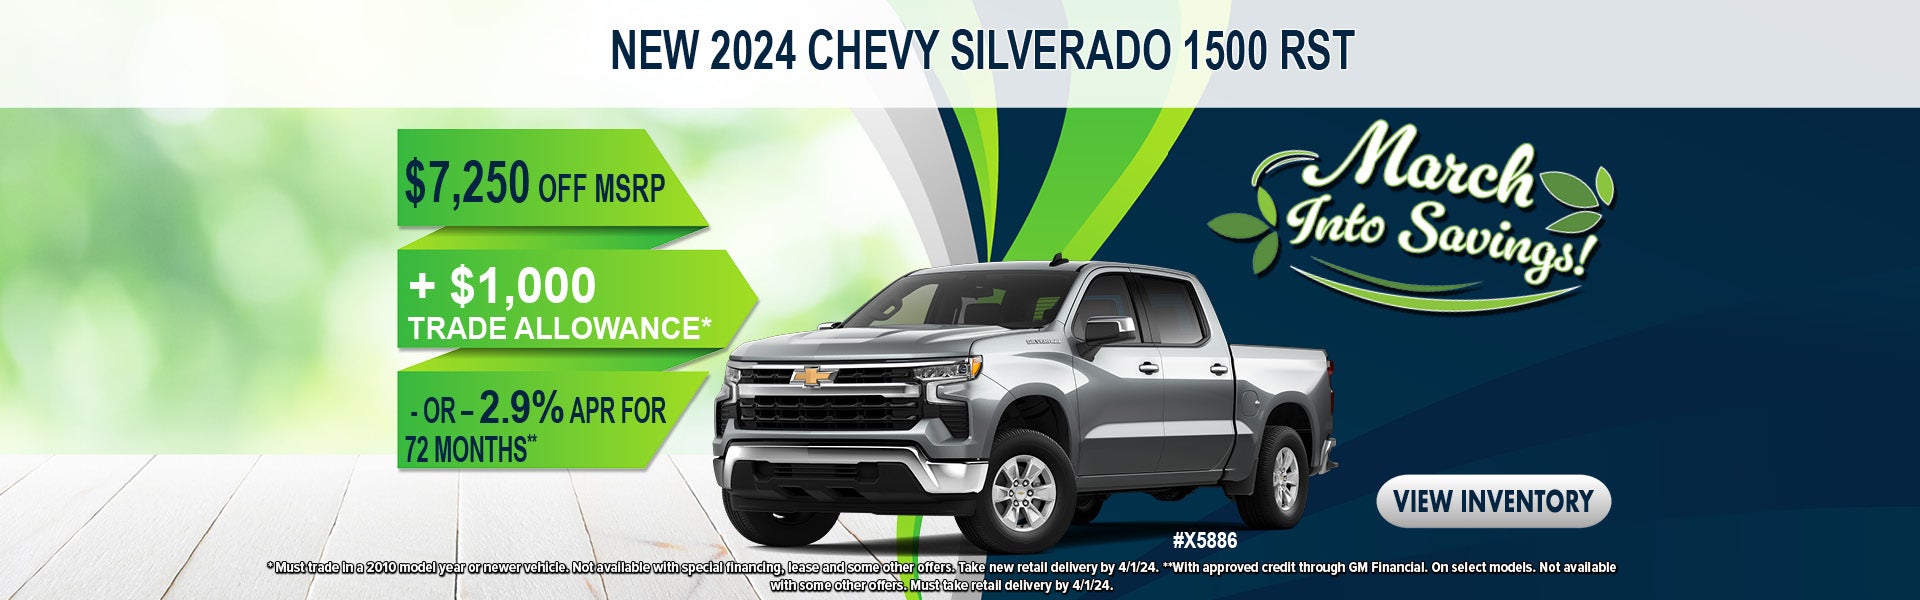 2024 Chevy Silverado 